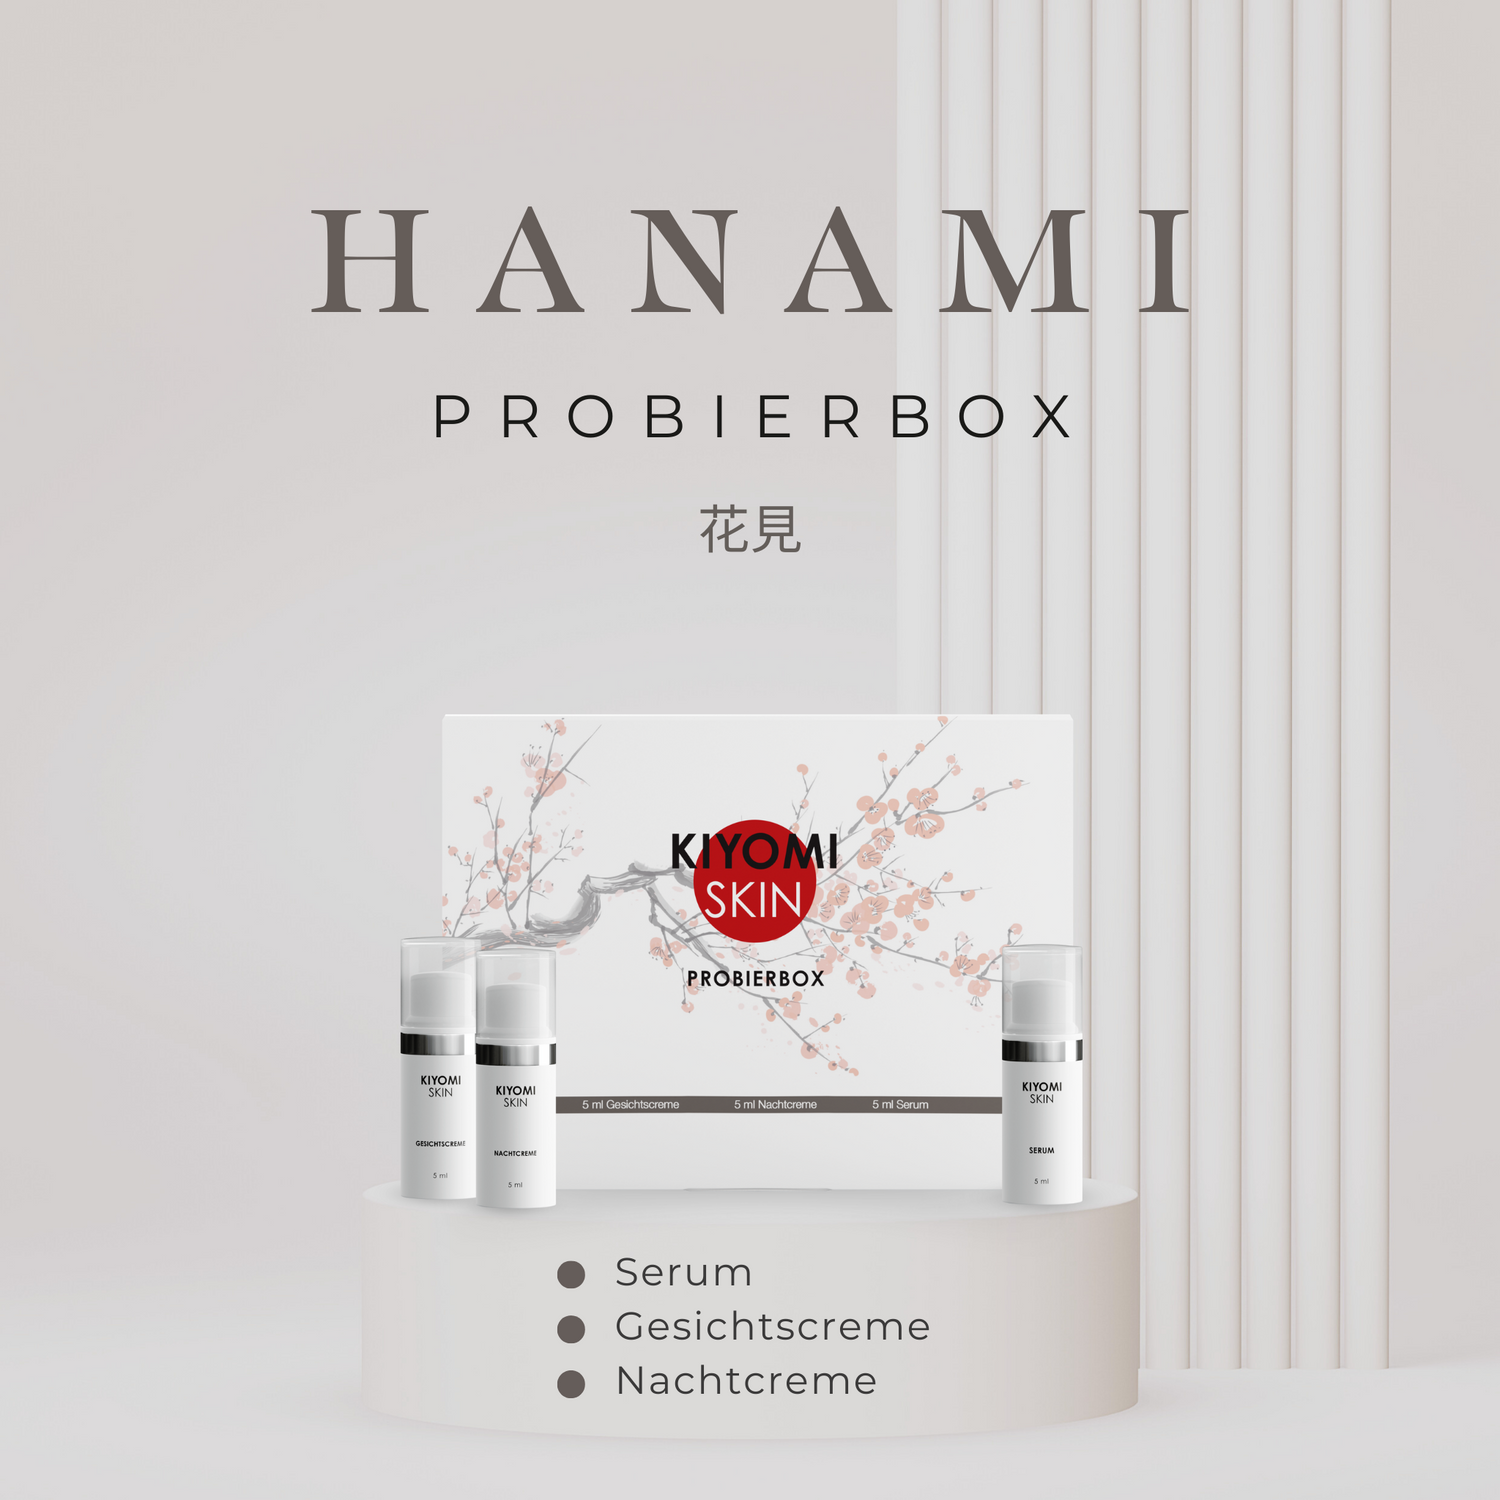 Probierbox Hanami